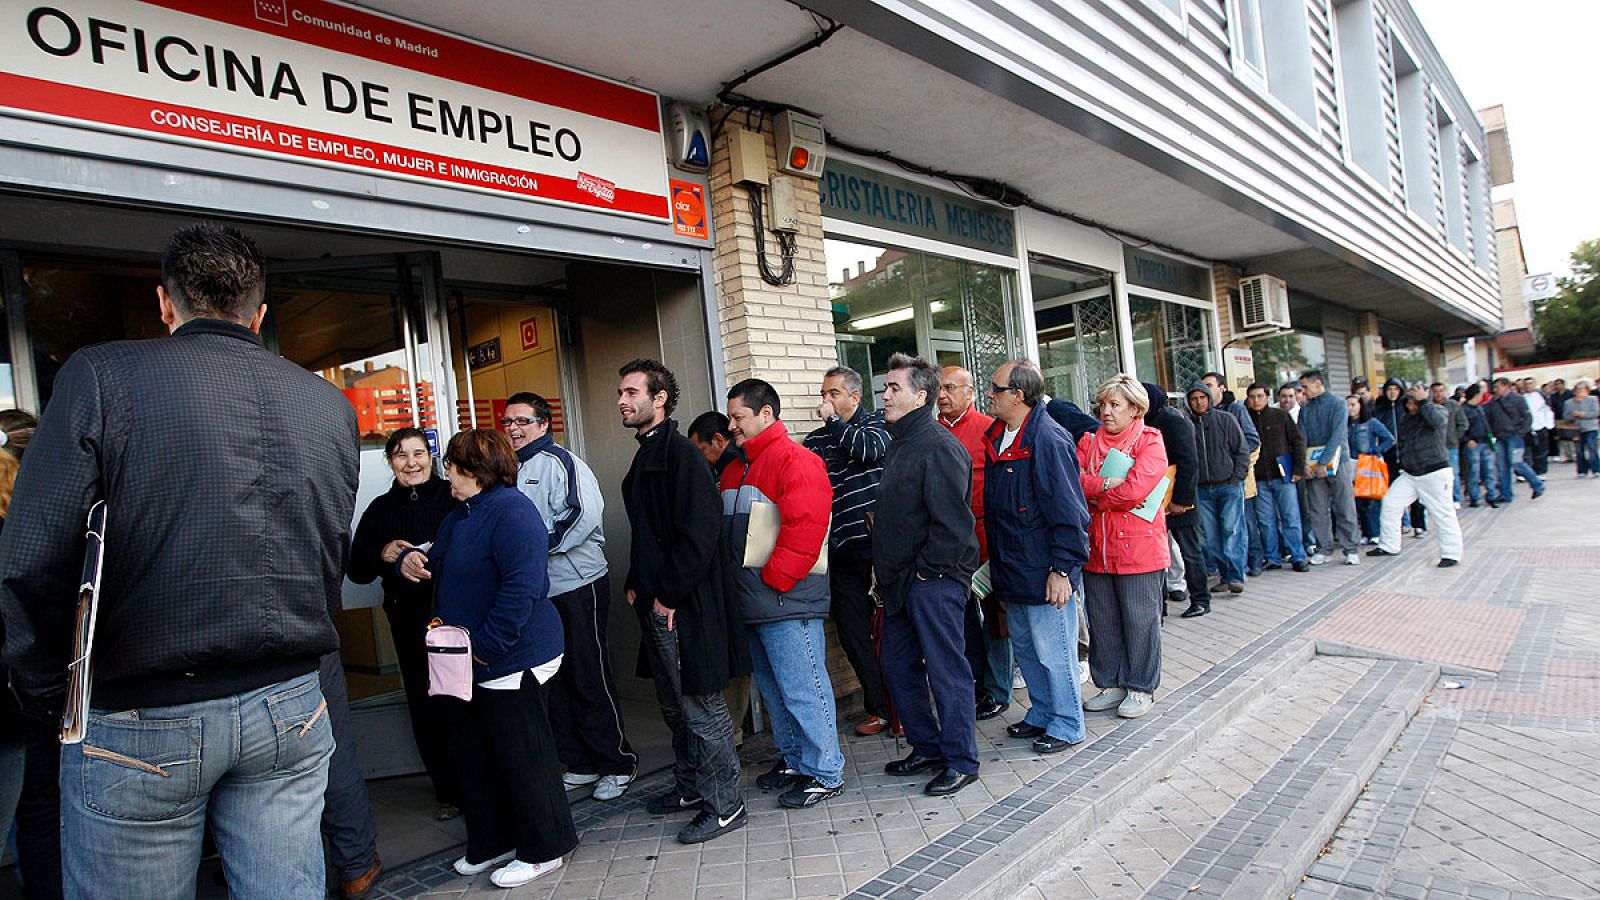 Cola de personas esperando su turno en una oficina de empleo de un barrio de Madrid